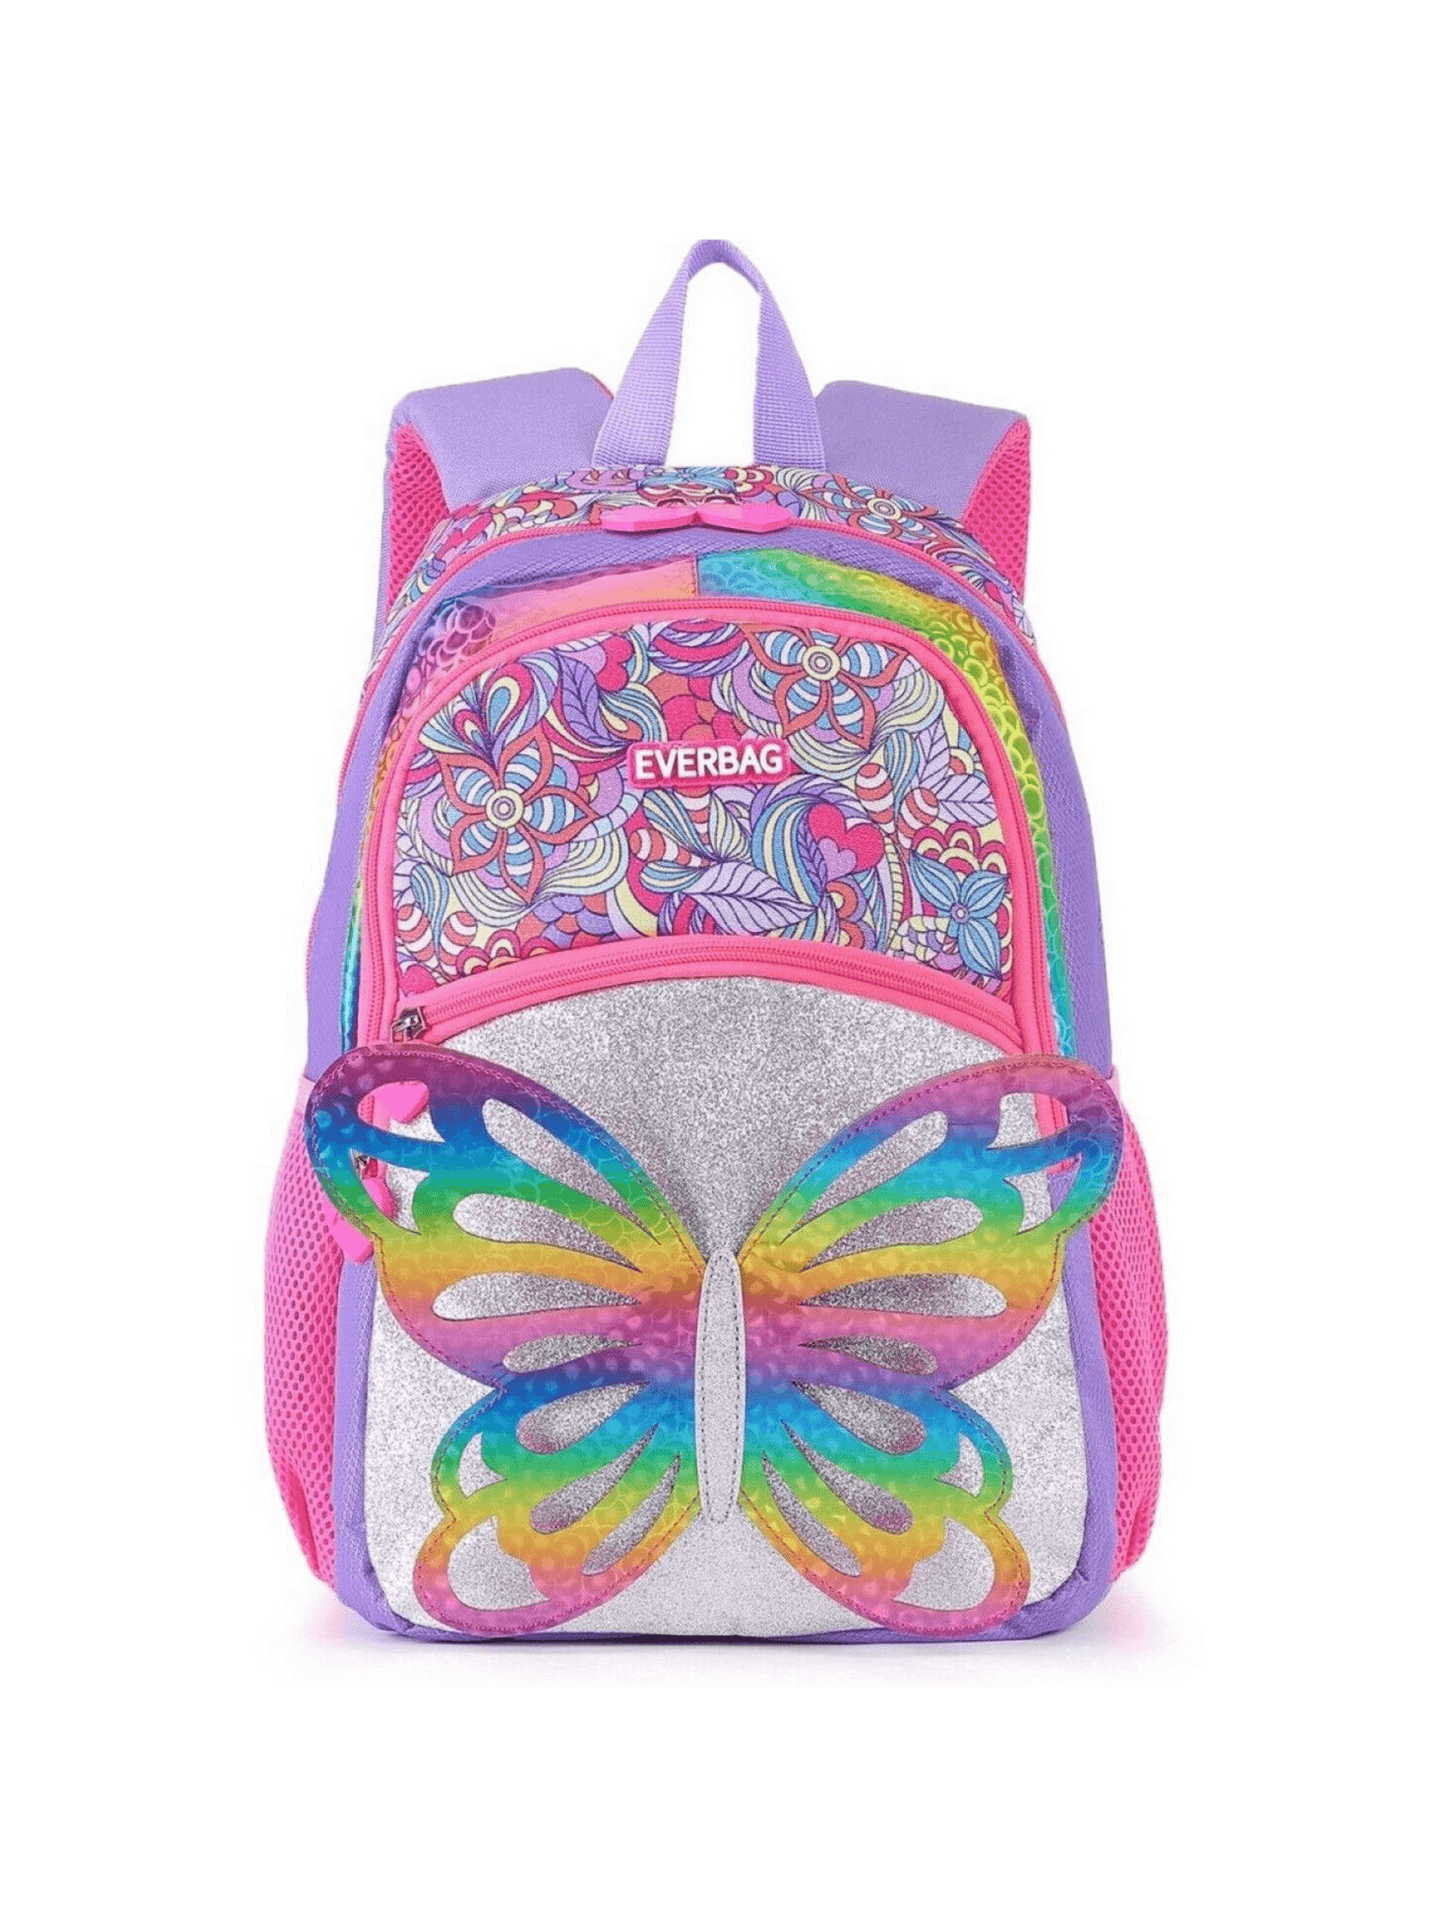 Cute Preschool Backpack with Glitters Australia